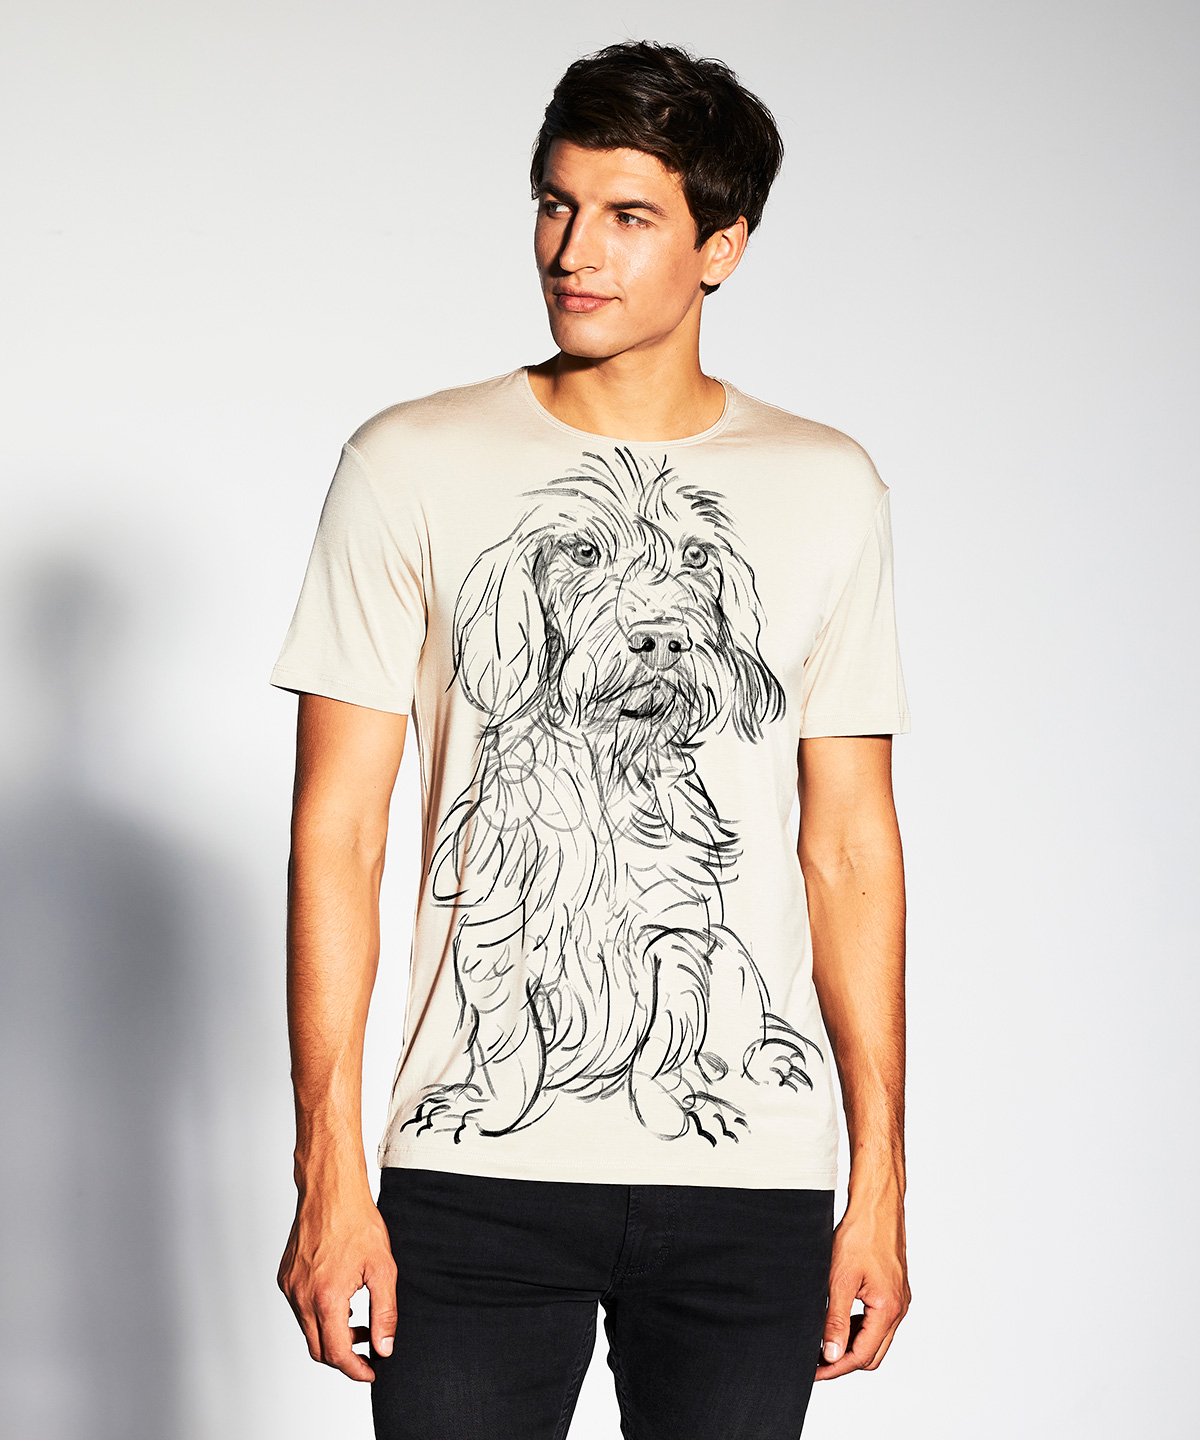 Wirehaired Dachshund hummus t-shirt MAN